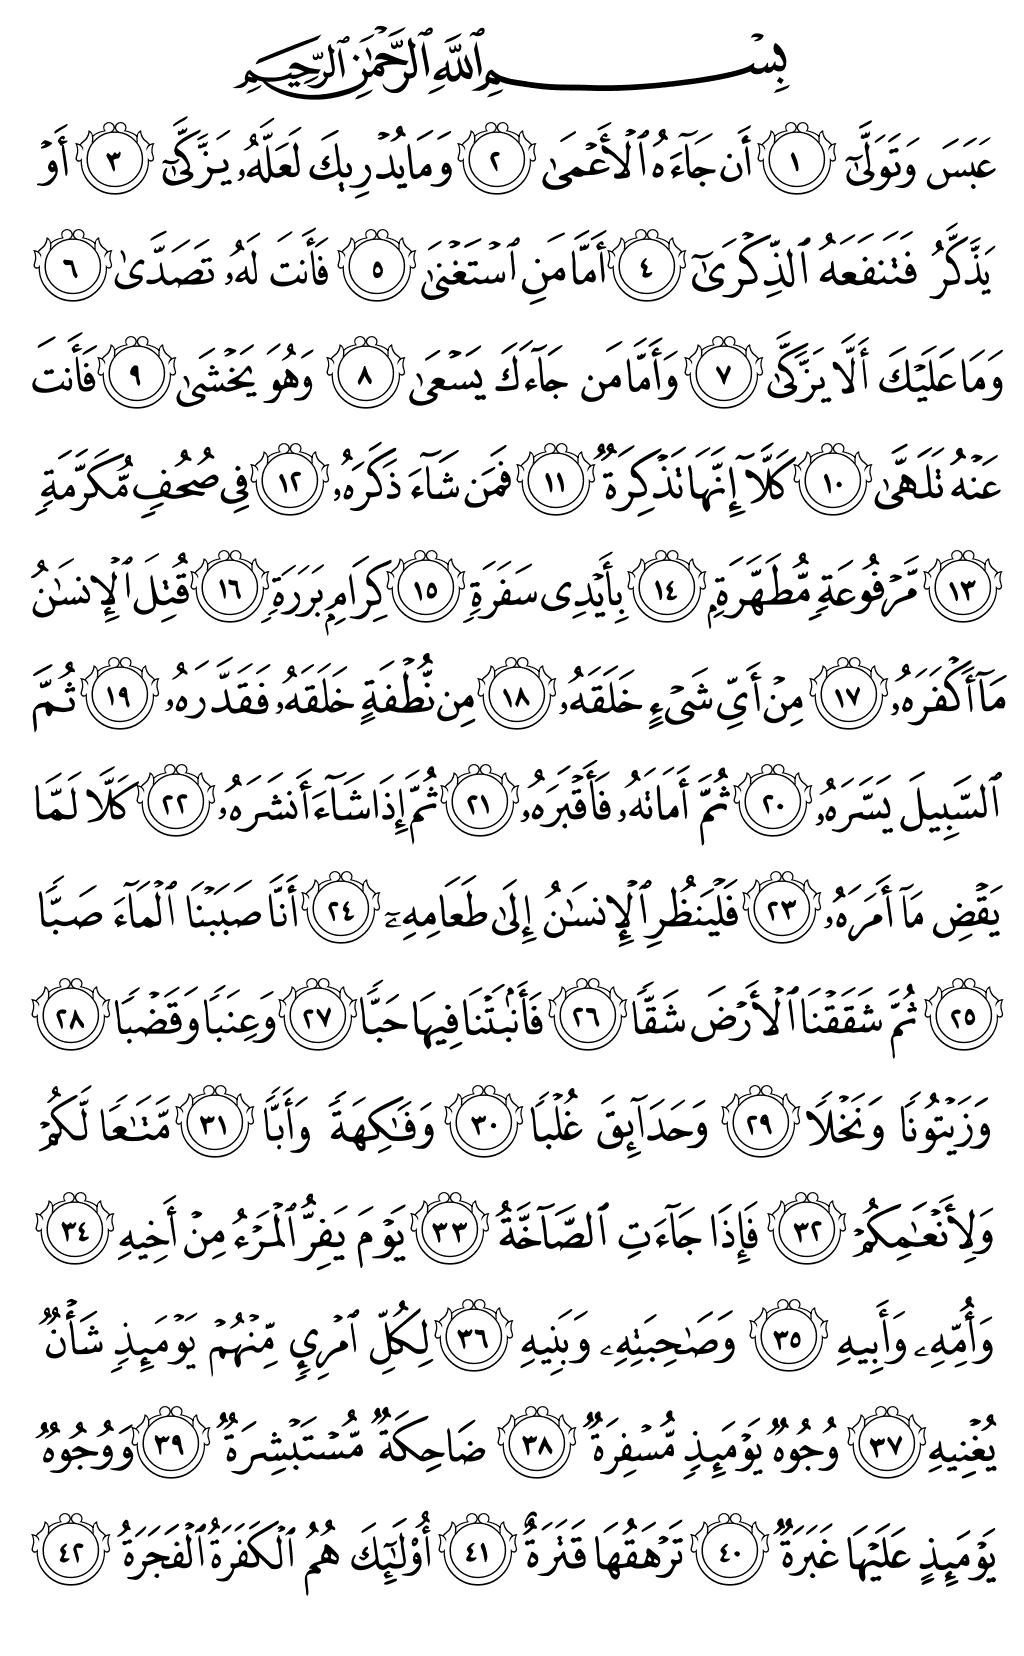 الصفحة رقم 585 من القرآن الكريم